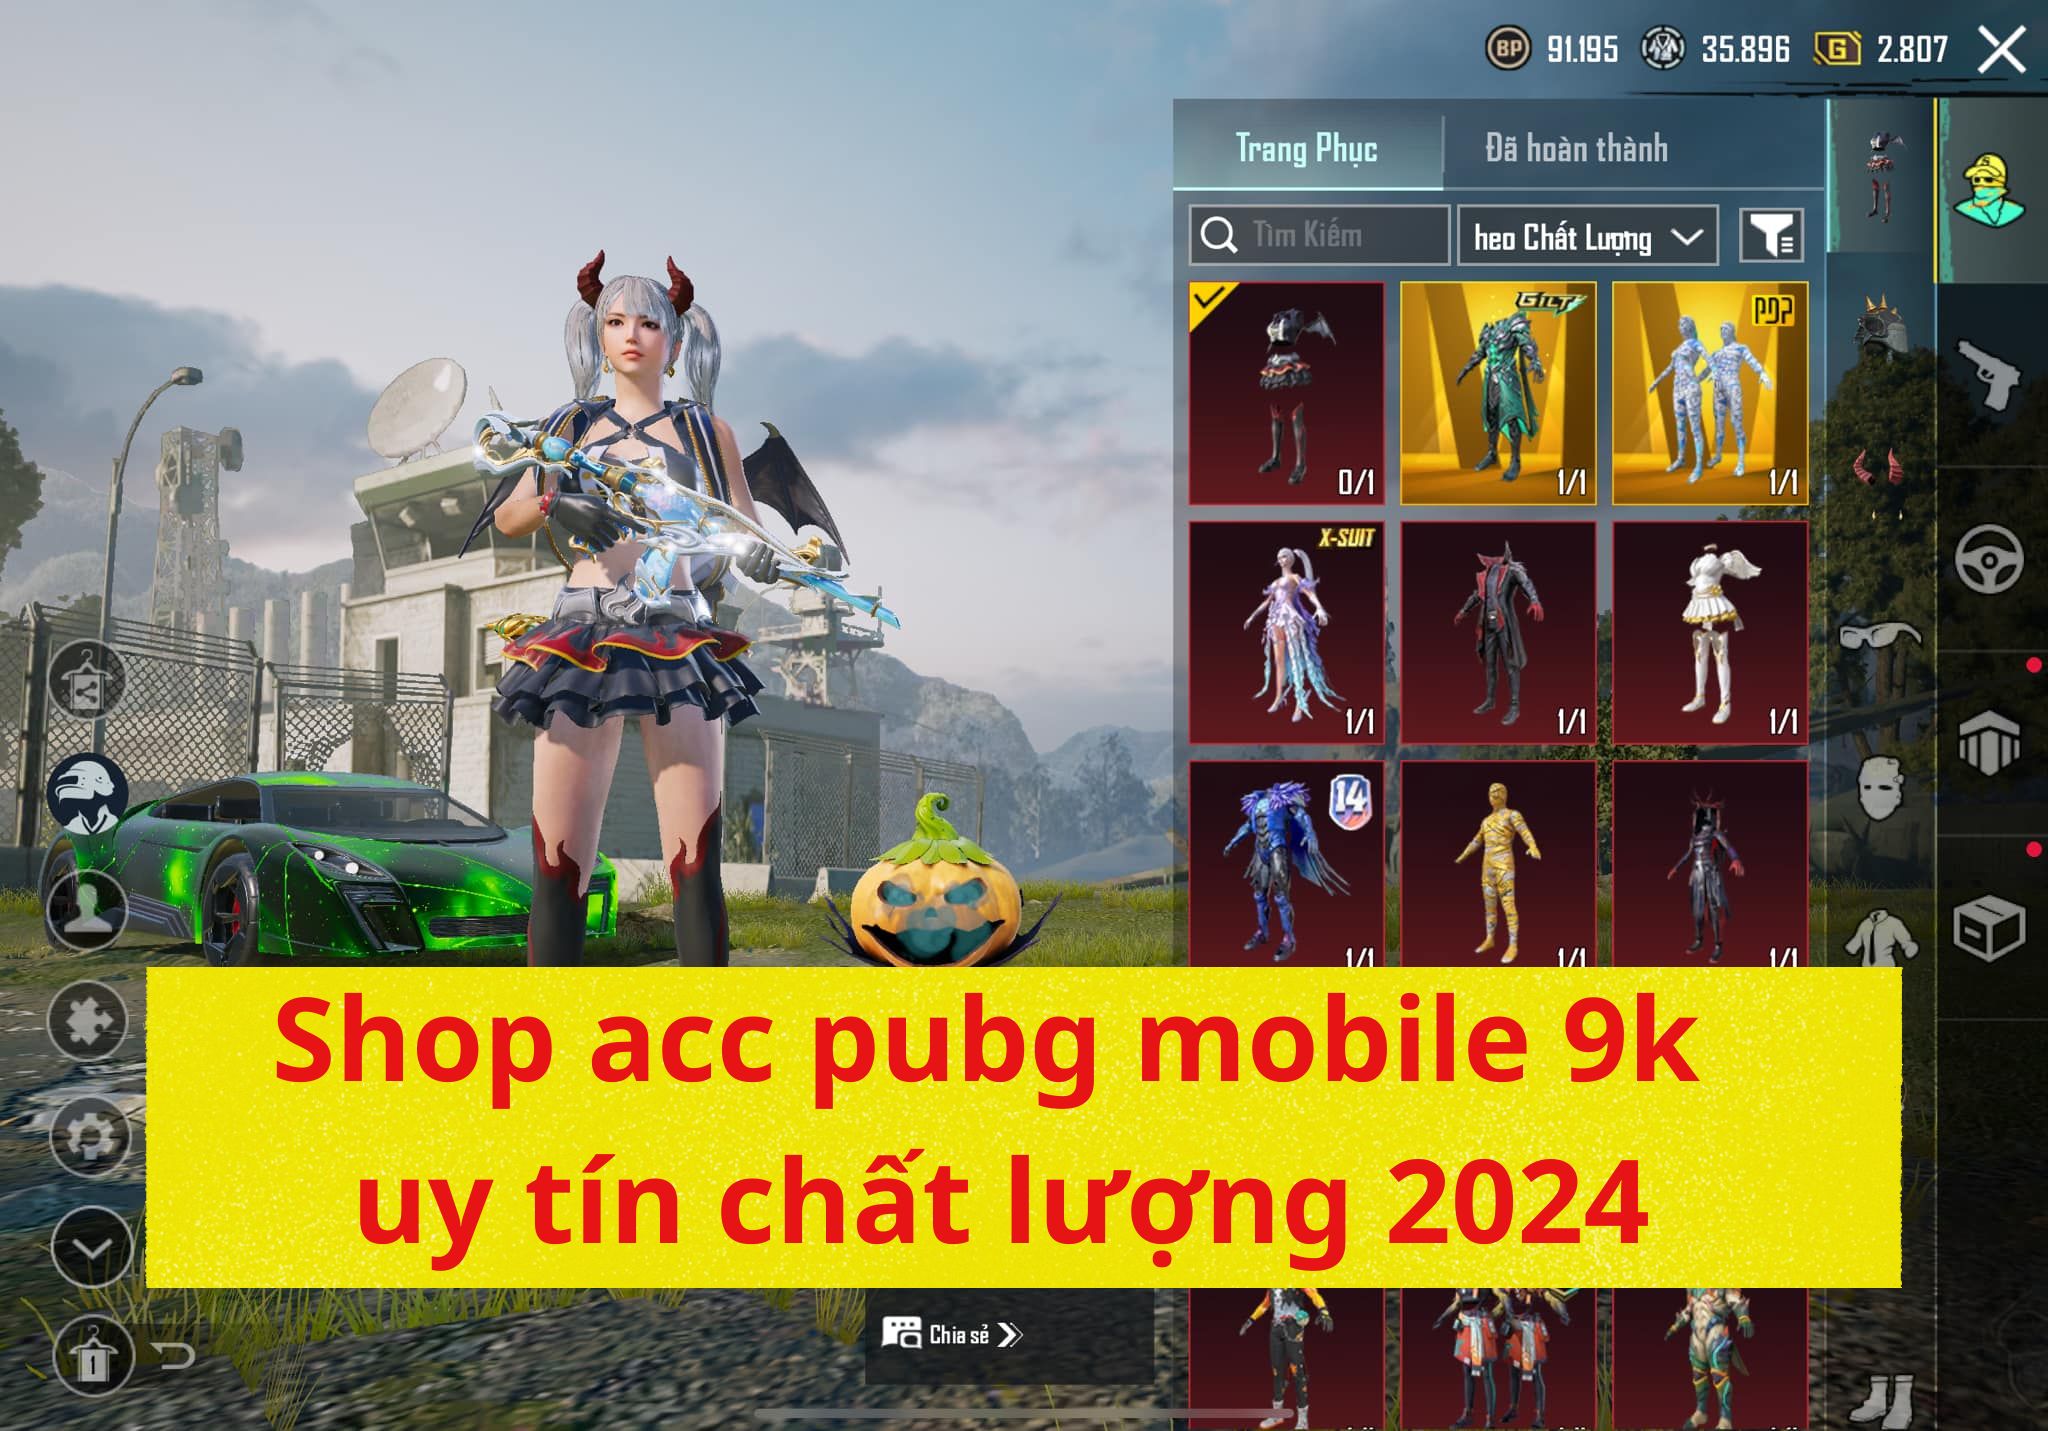 Shop acc pubg mobile 9k uy tín chất lượng 2024